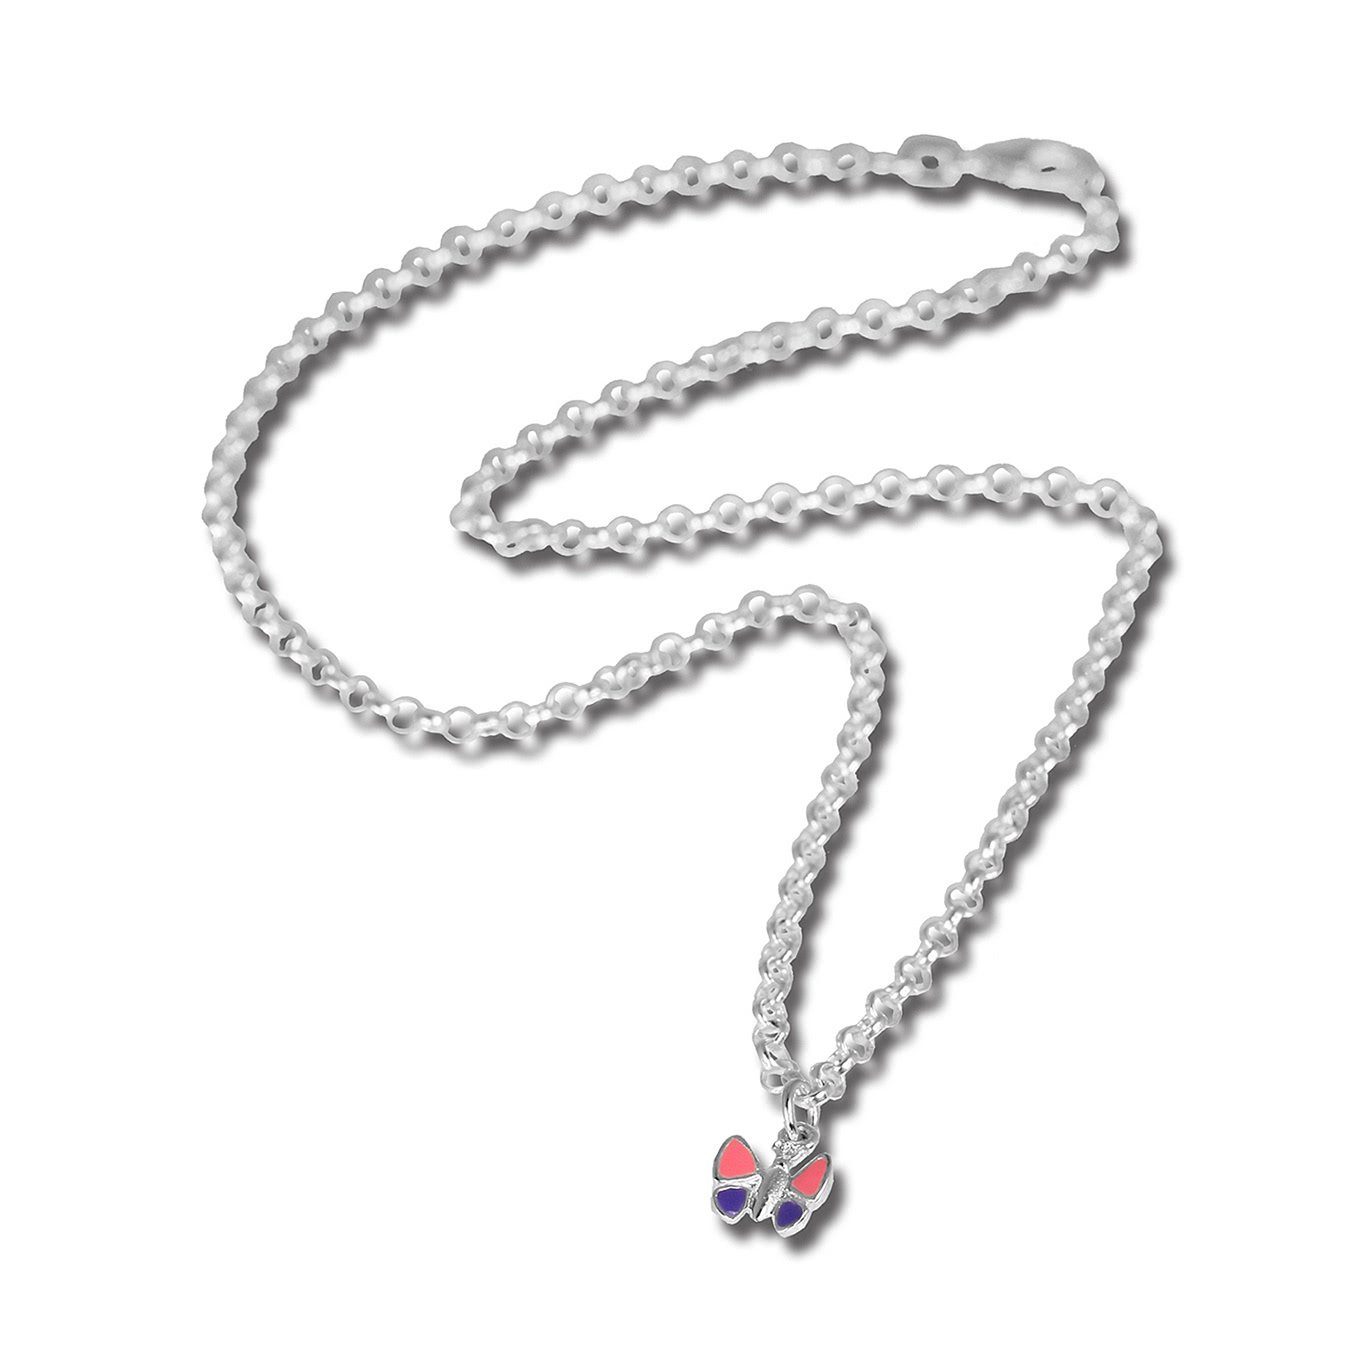 Schmetterling Kinder Anhänger Halskette (Schmetterling) Silber, Kette Halskette, ca. 925 Teenie-Weenie Teenie-Weenie 38cm, mit Sterling Farbe: